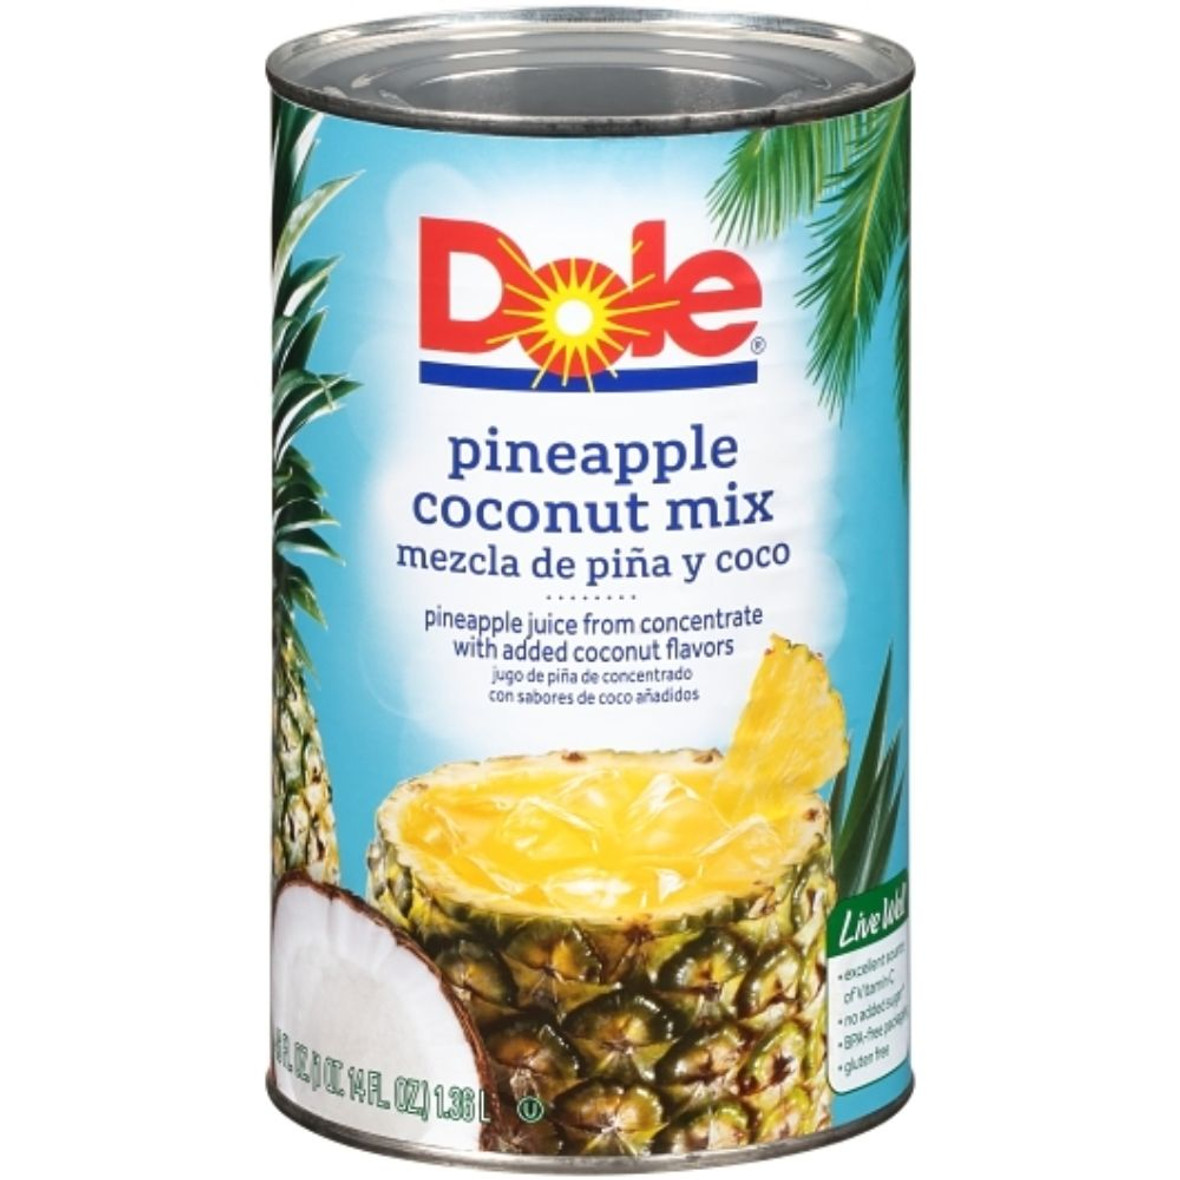 Dole Pineapple Coconut Mix, 46 Ounces